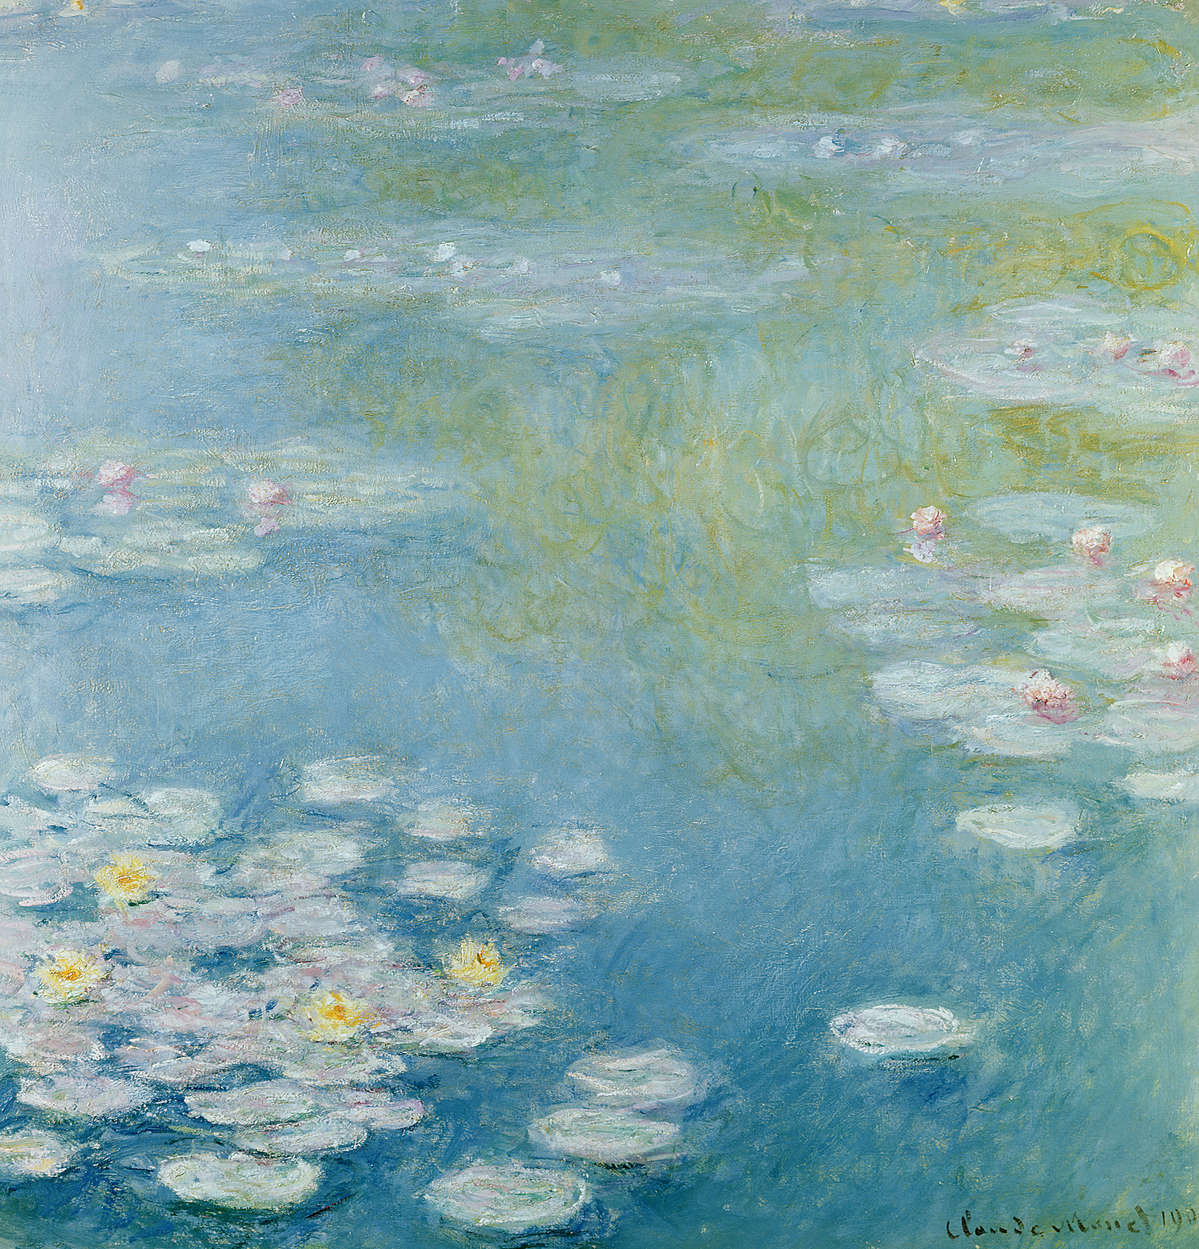             Muurschildering "Nimfen in Giverny" van Claude Monet
        